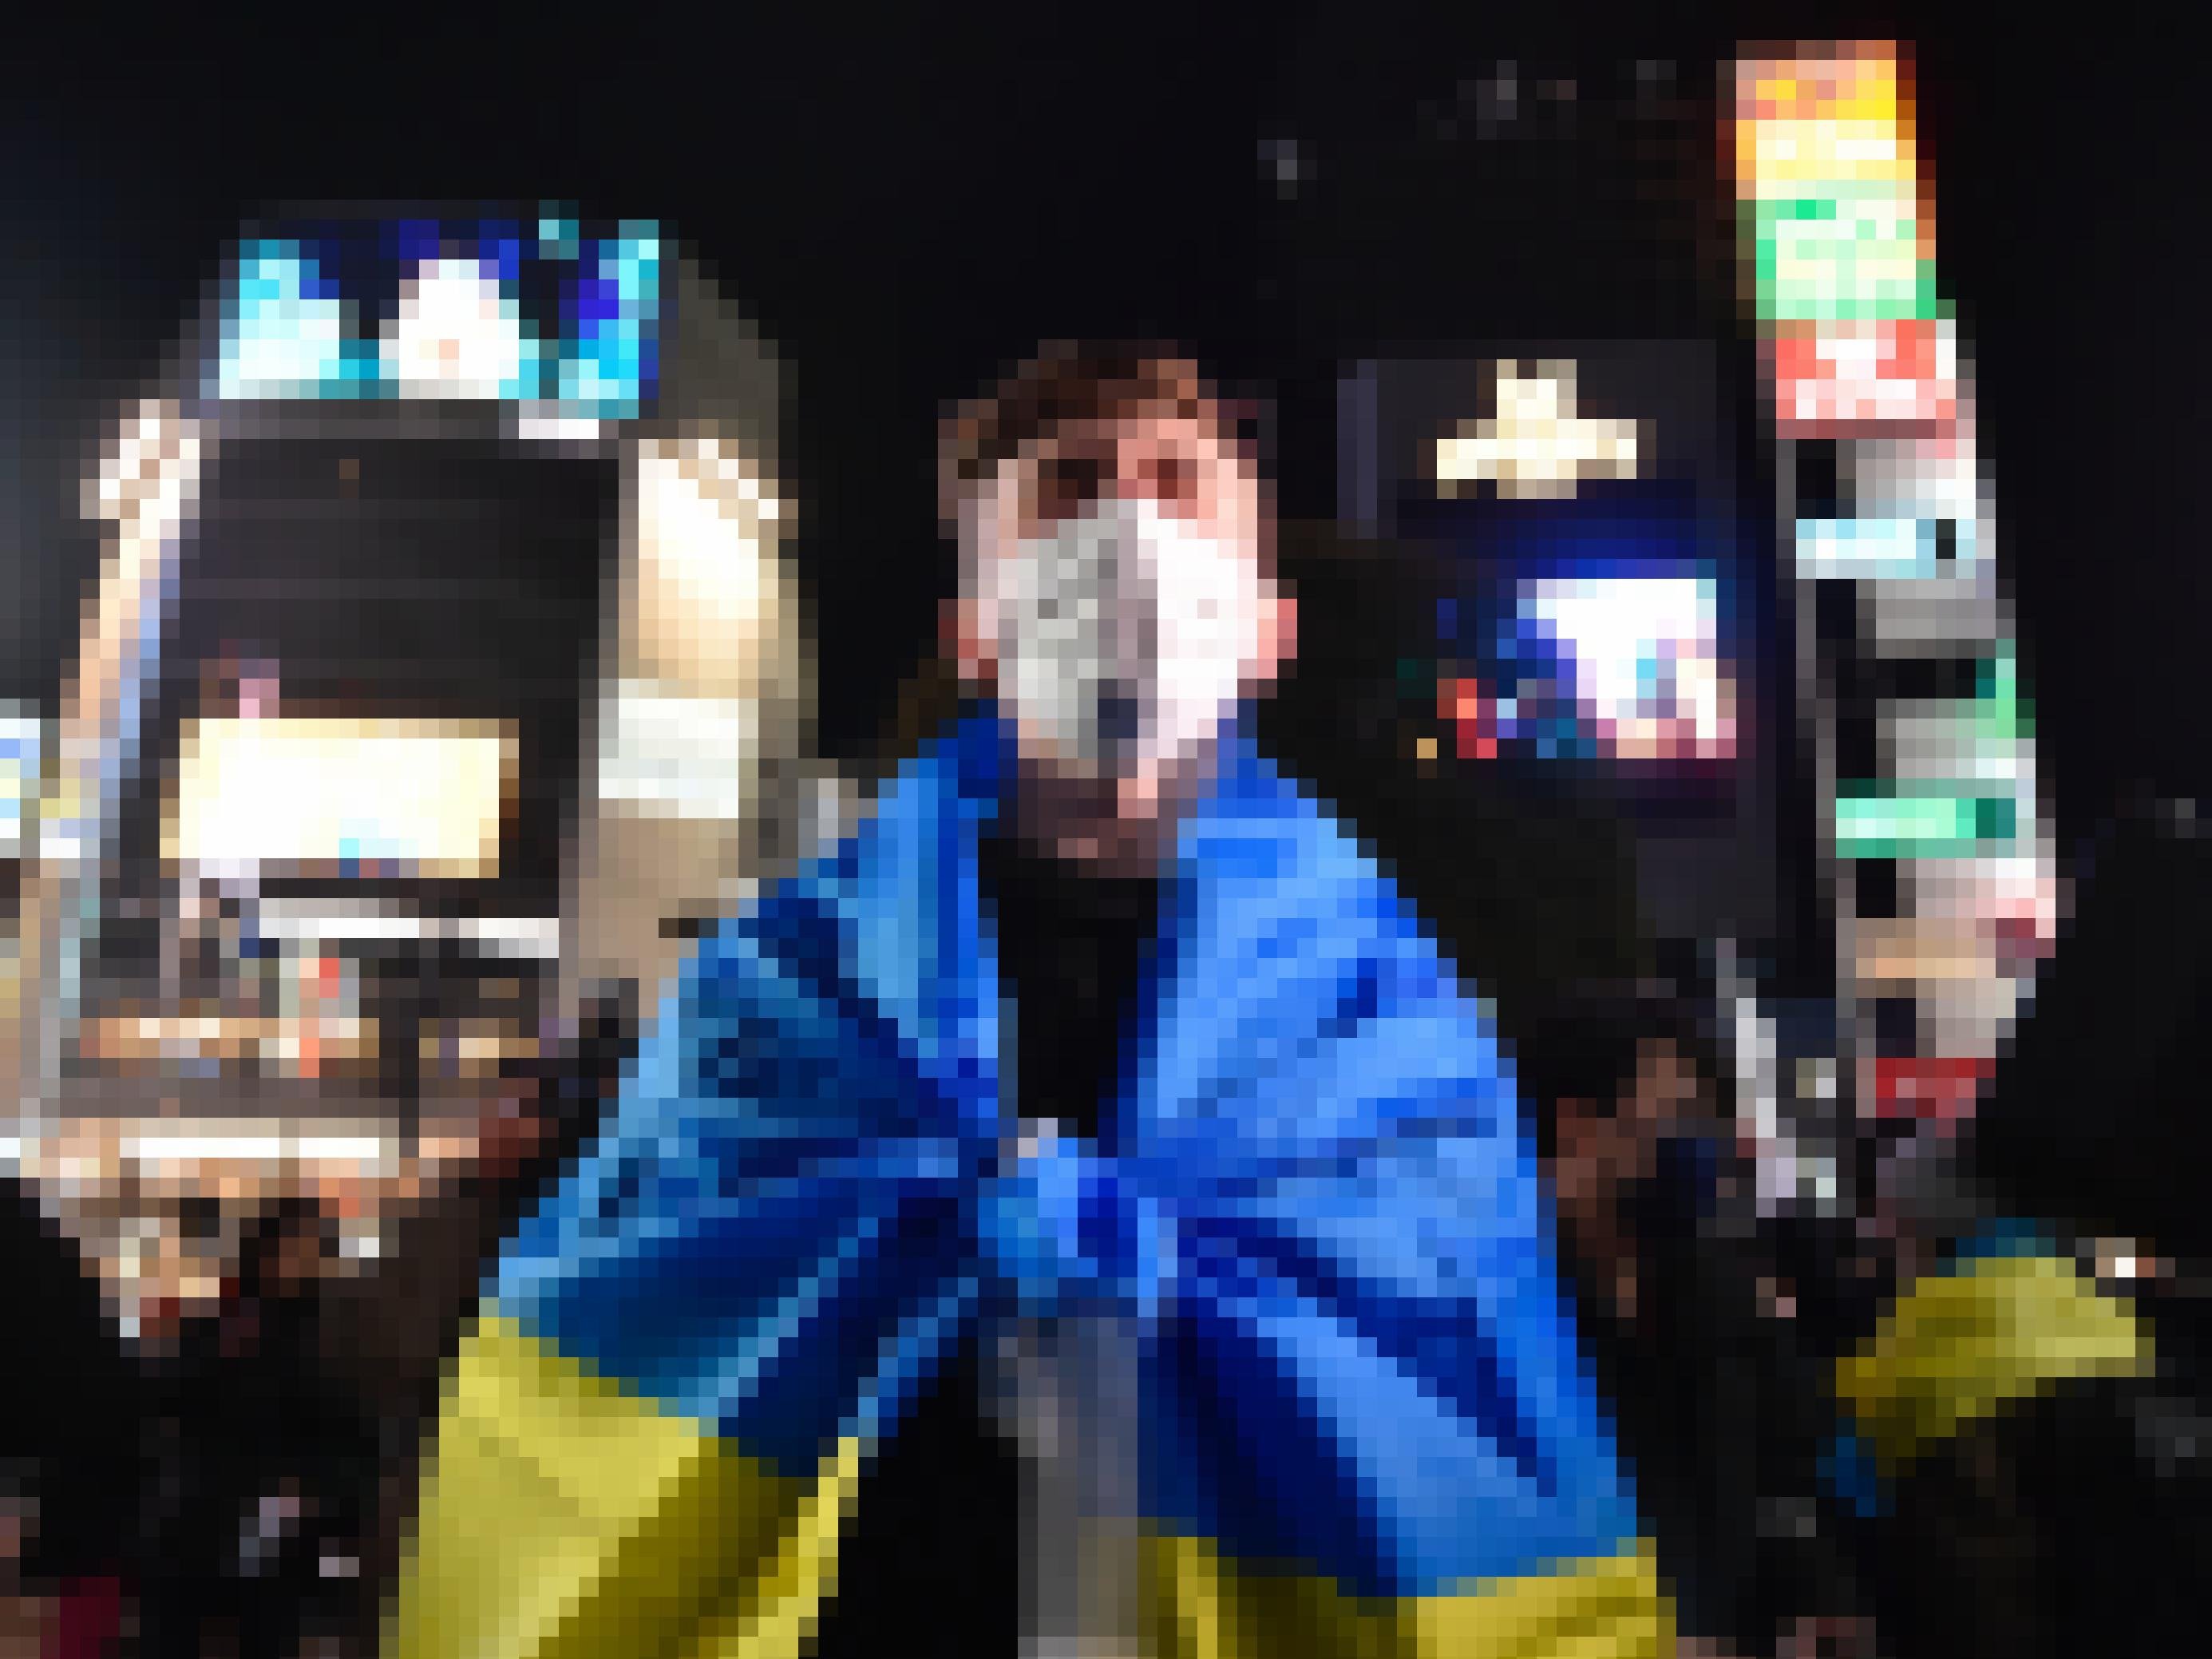 Ein junger Mann steht nachts auf einem beleuchteten Platz in Tokio. Er ist in eine Fahne in ukrainischen Farben Gelb und Blau gehüllt und hat einen verzweifelten Gesichtsausdruck.